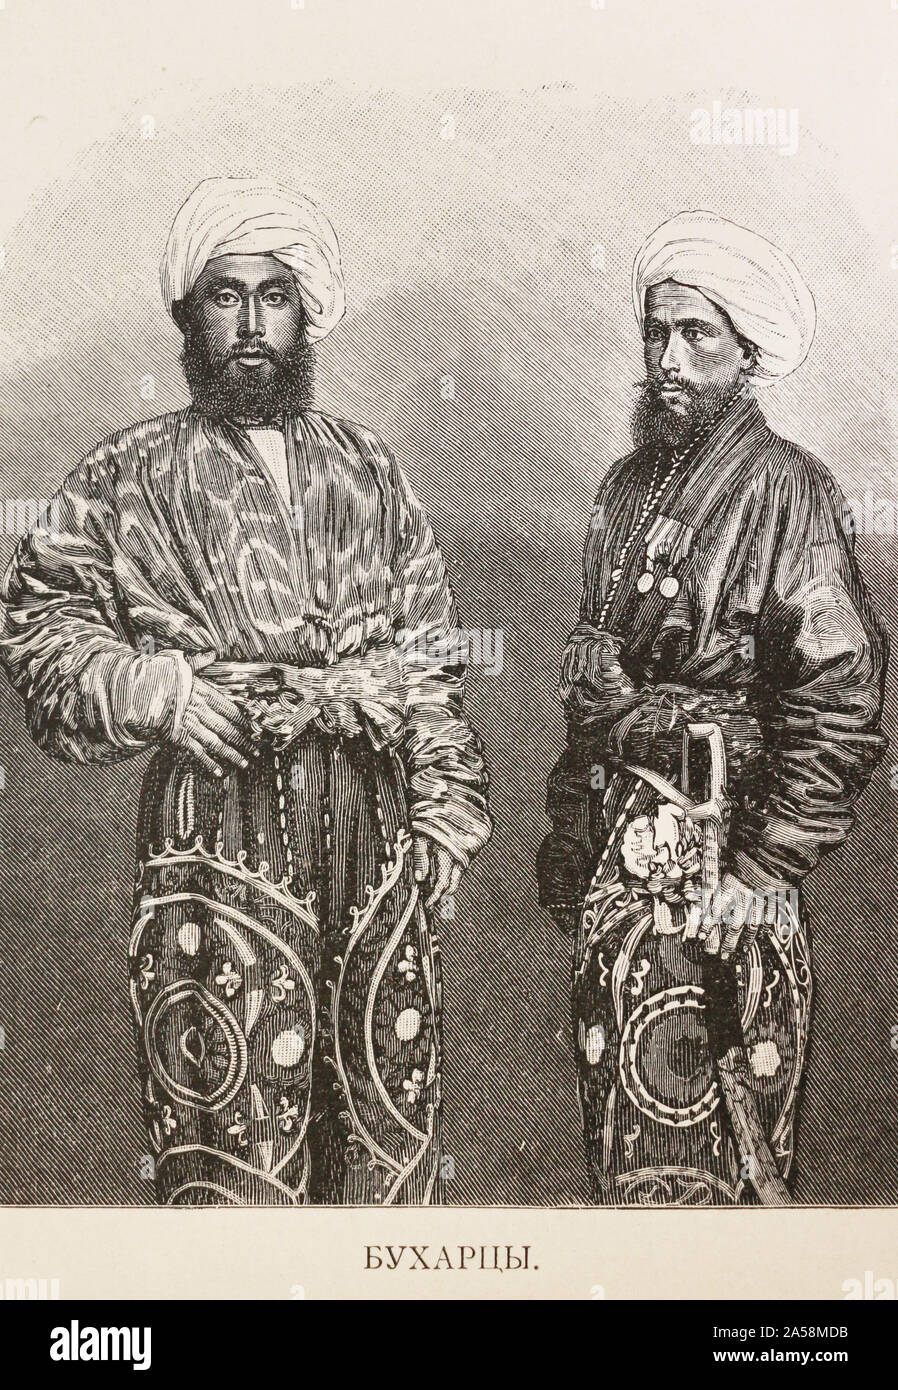 Buchara Menschen (Bewohner von Buchara, Usbekistan). Gravur des 19. Jahrhunderts. Stockfoto